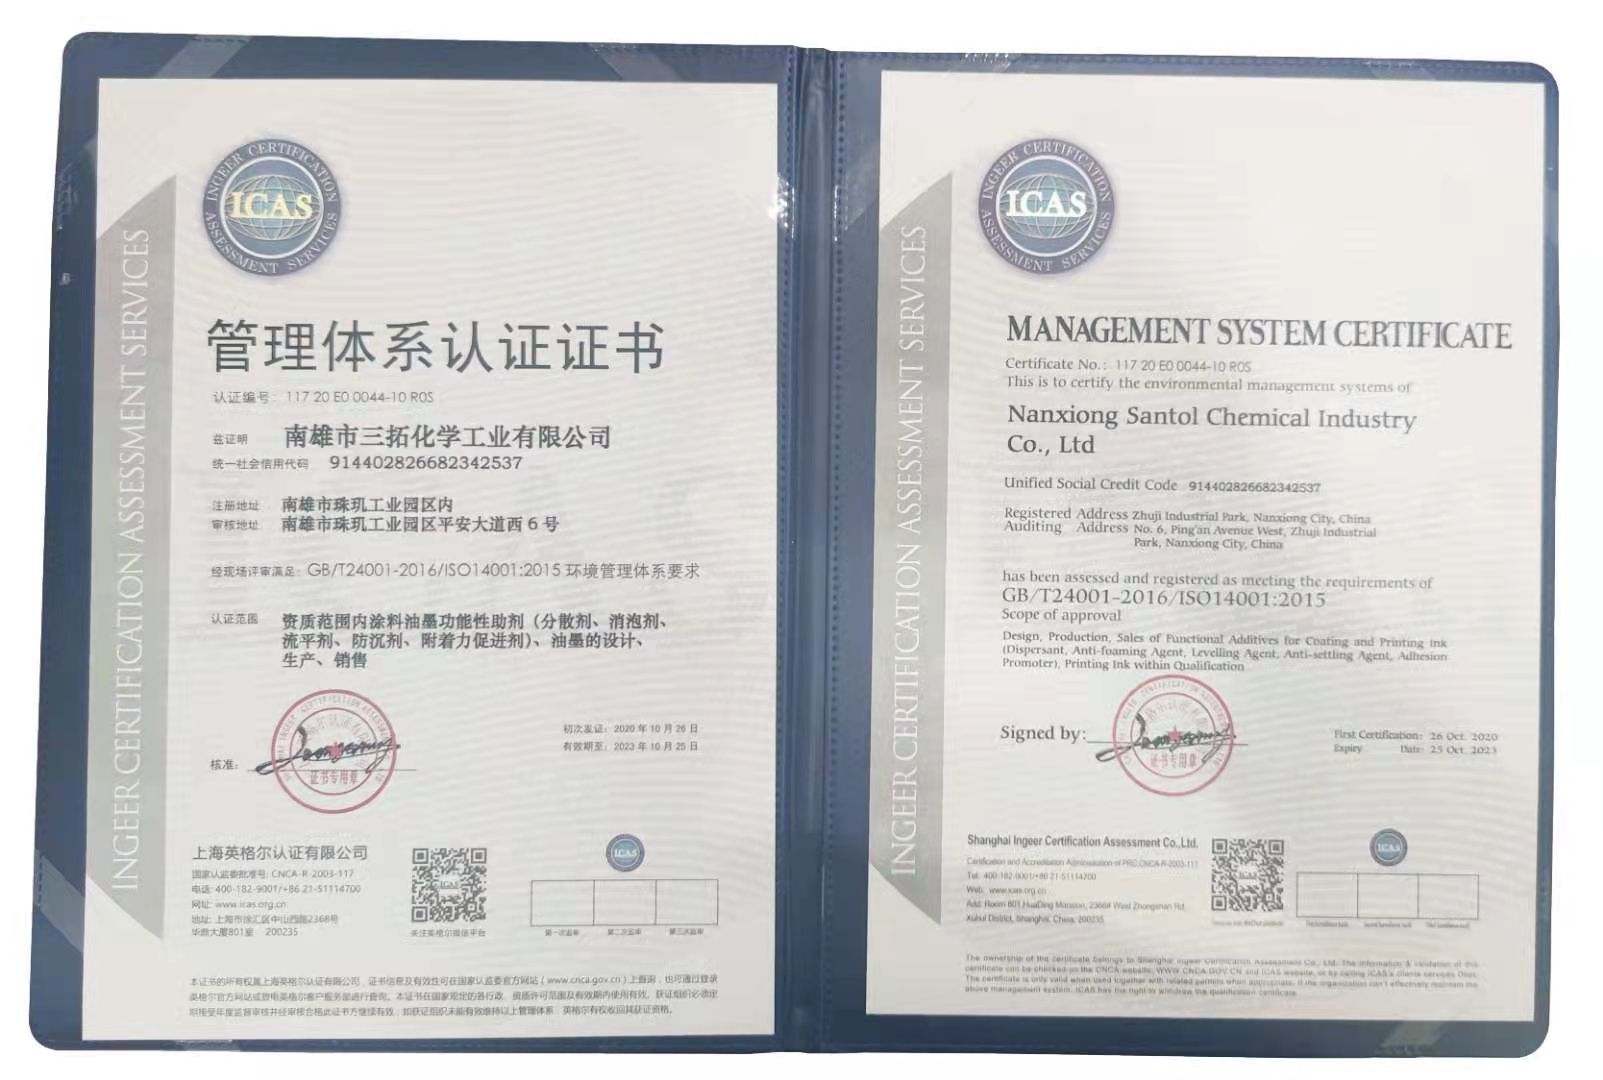 三拓化学已全面通过ISO14001质量管理体系认证